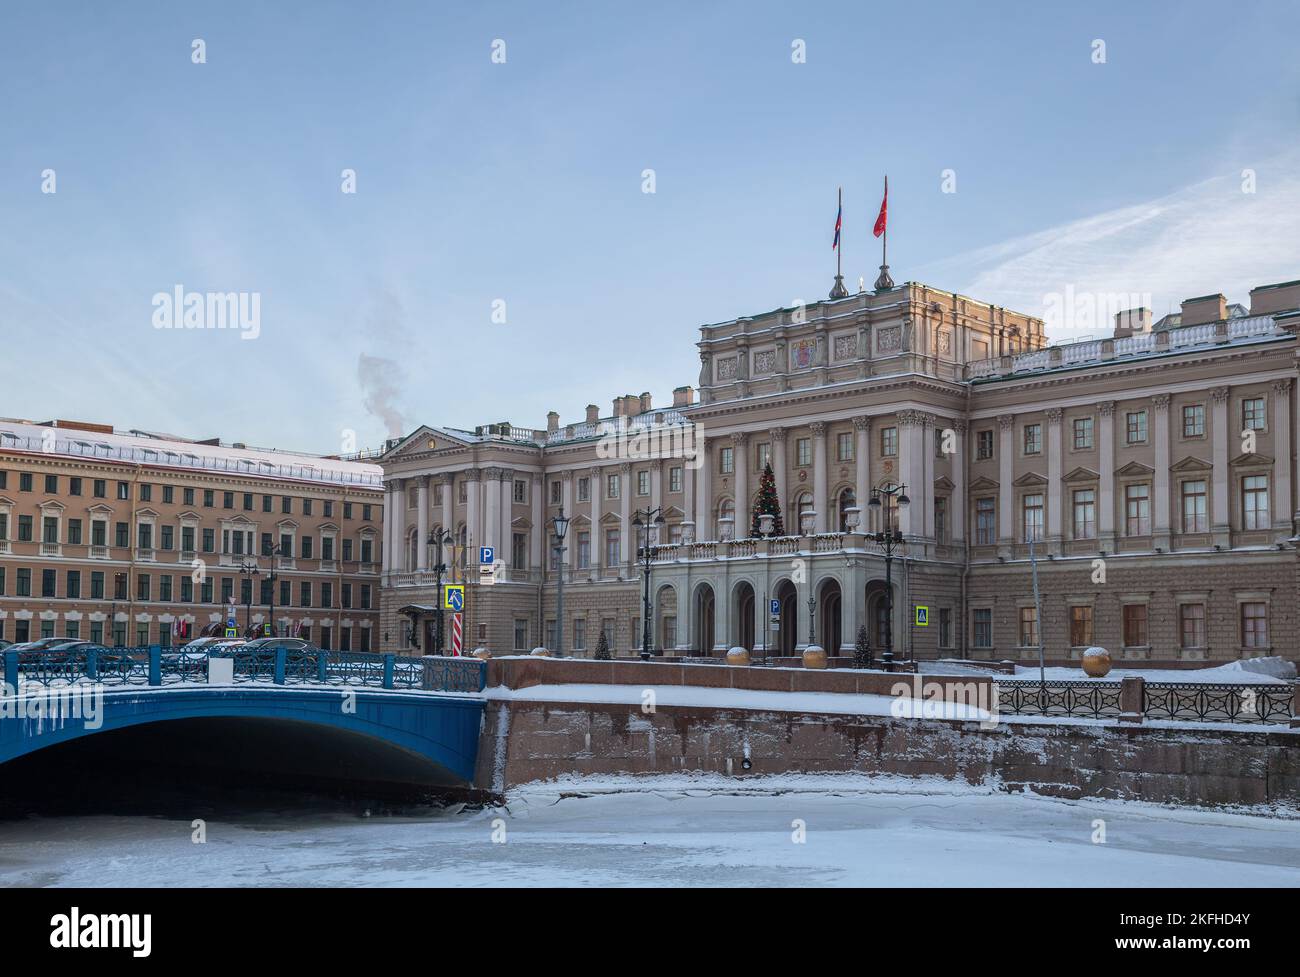 Saint-Pétersbourg d'hiver. Le bâtiment de l'Assemblée législative (Palais Mariinsky) est décoré d'arbres de Noël pour les vacances du nouvel an Banque D'Images